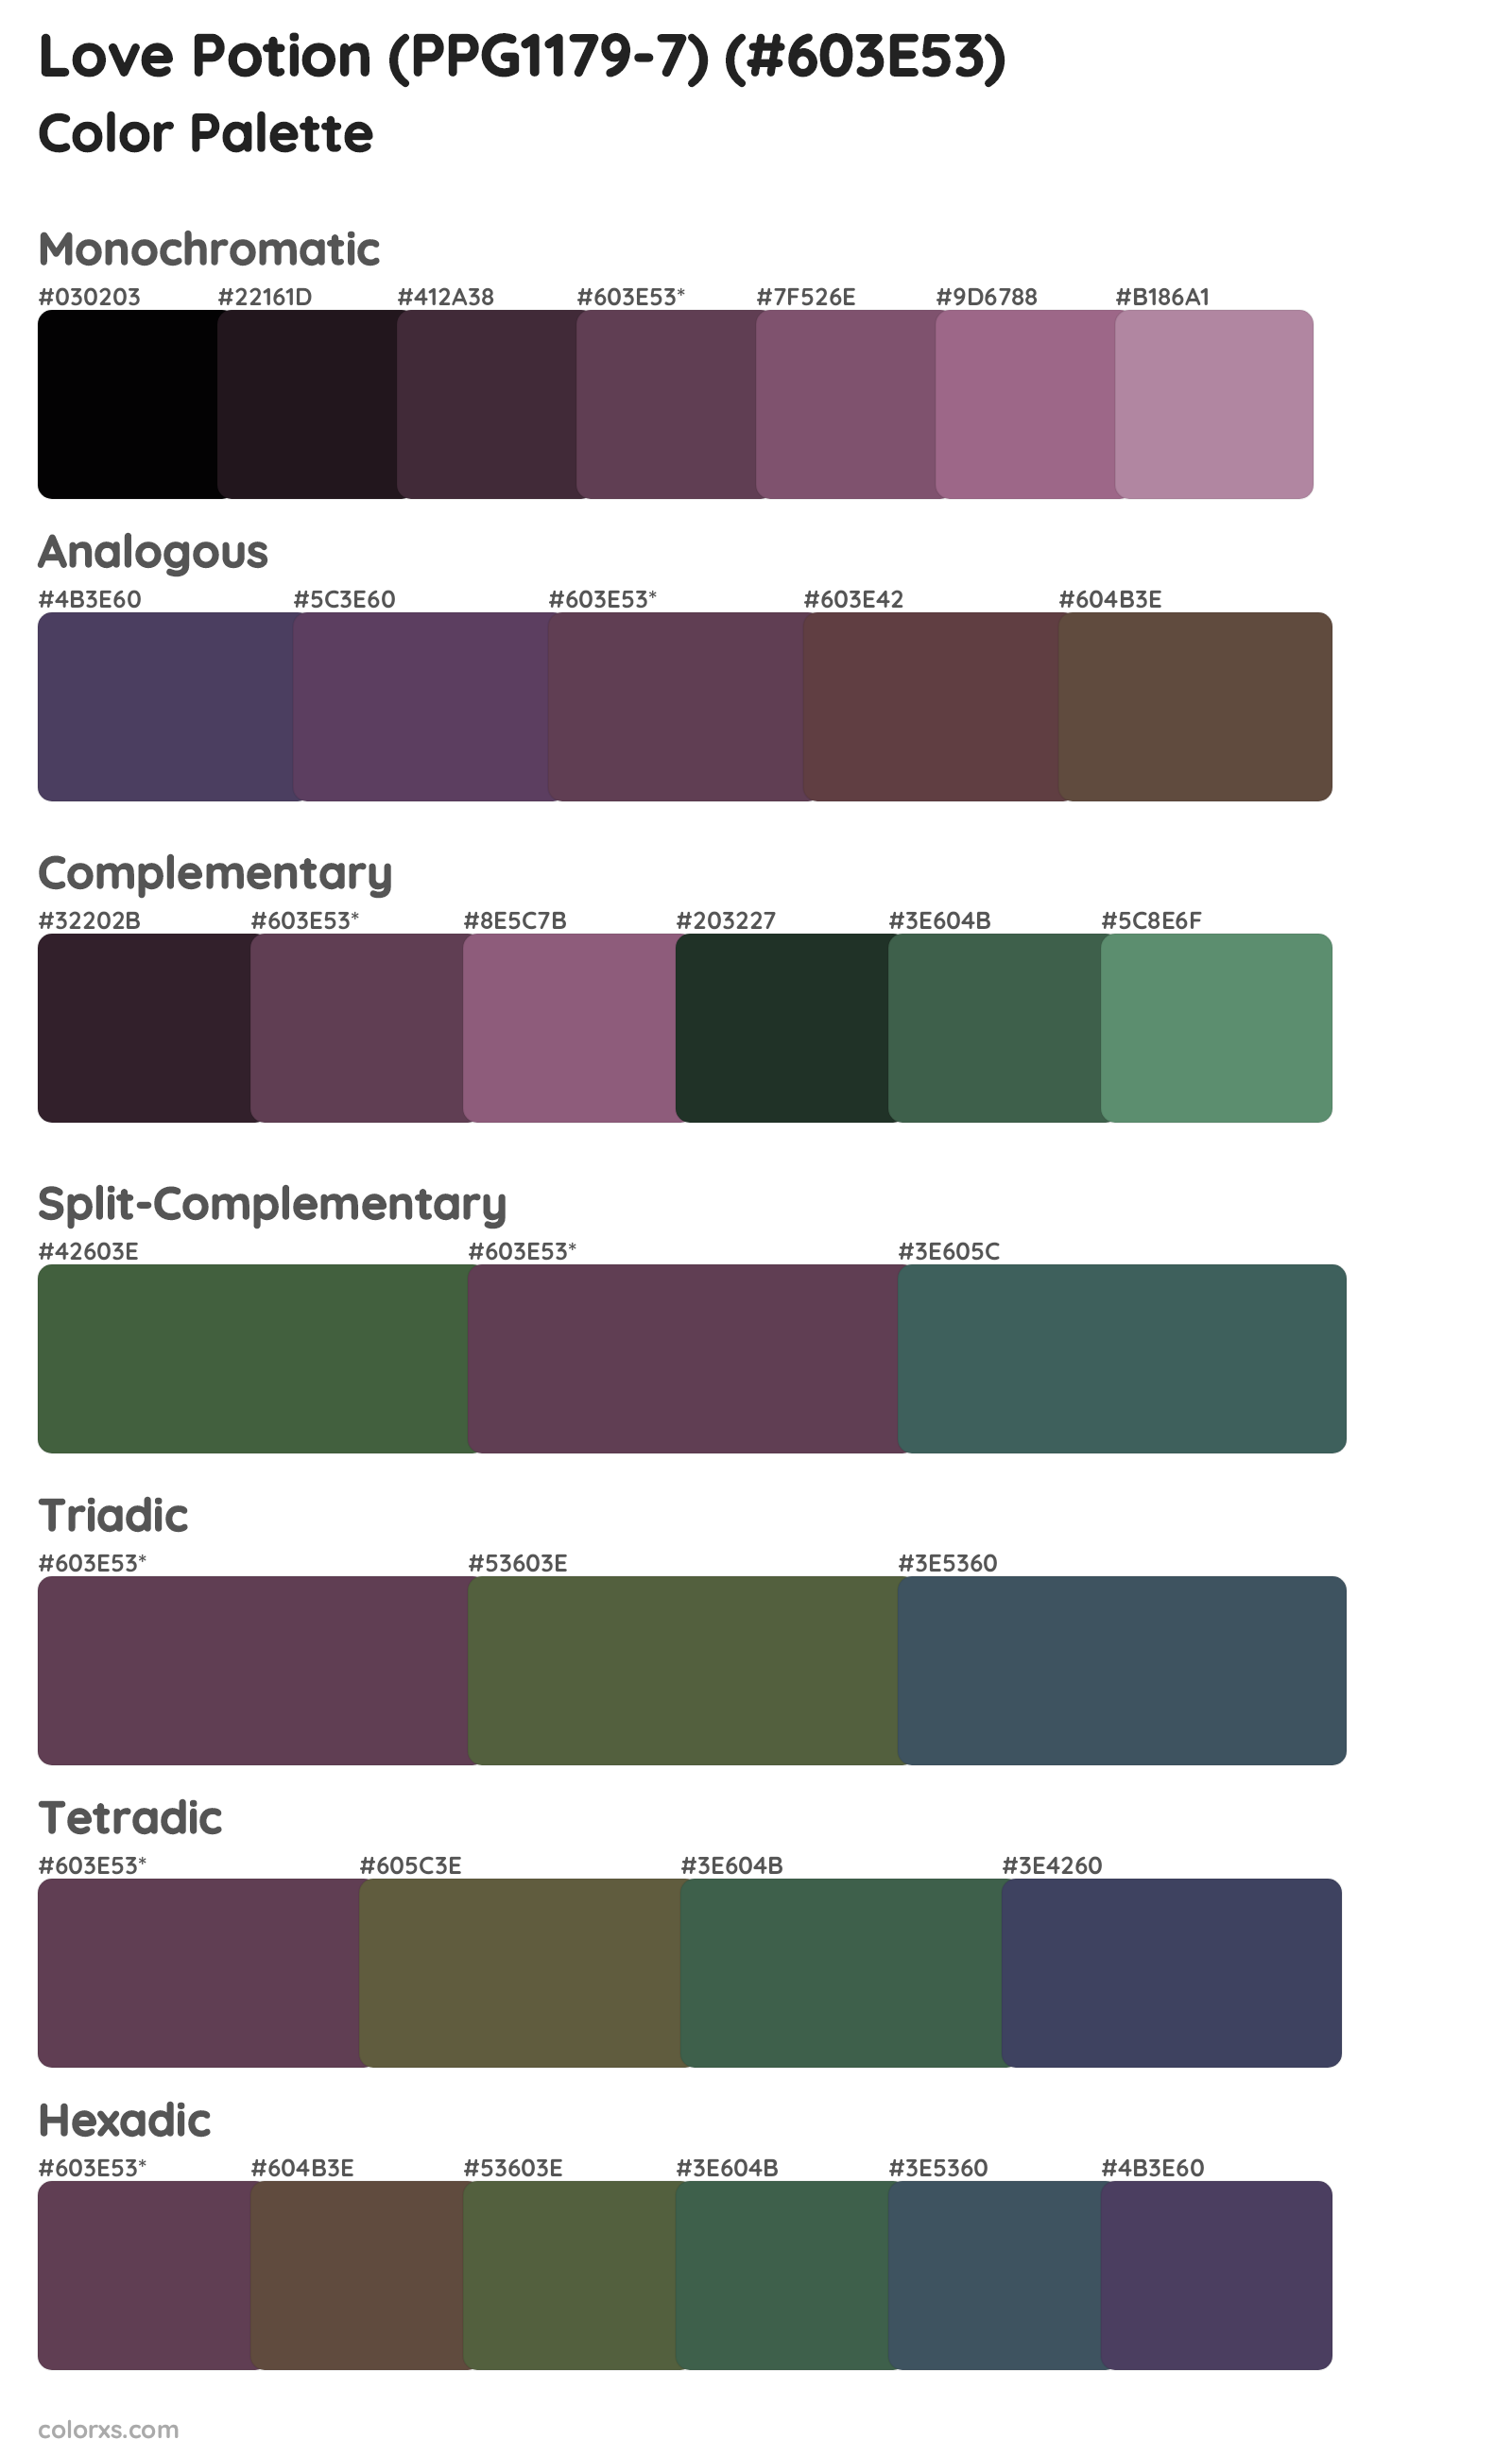 Love Potion (PPG1179-7) Color Scheme Palettes